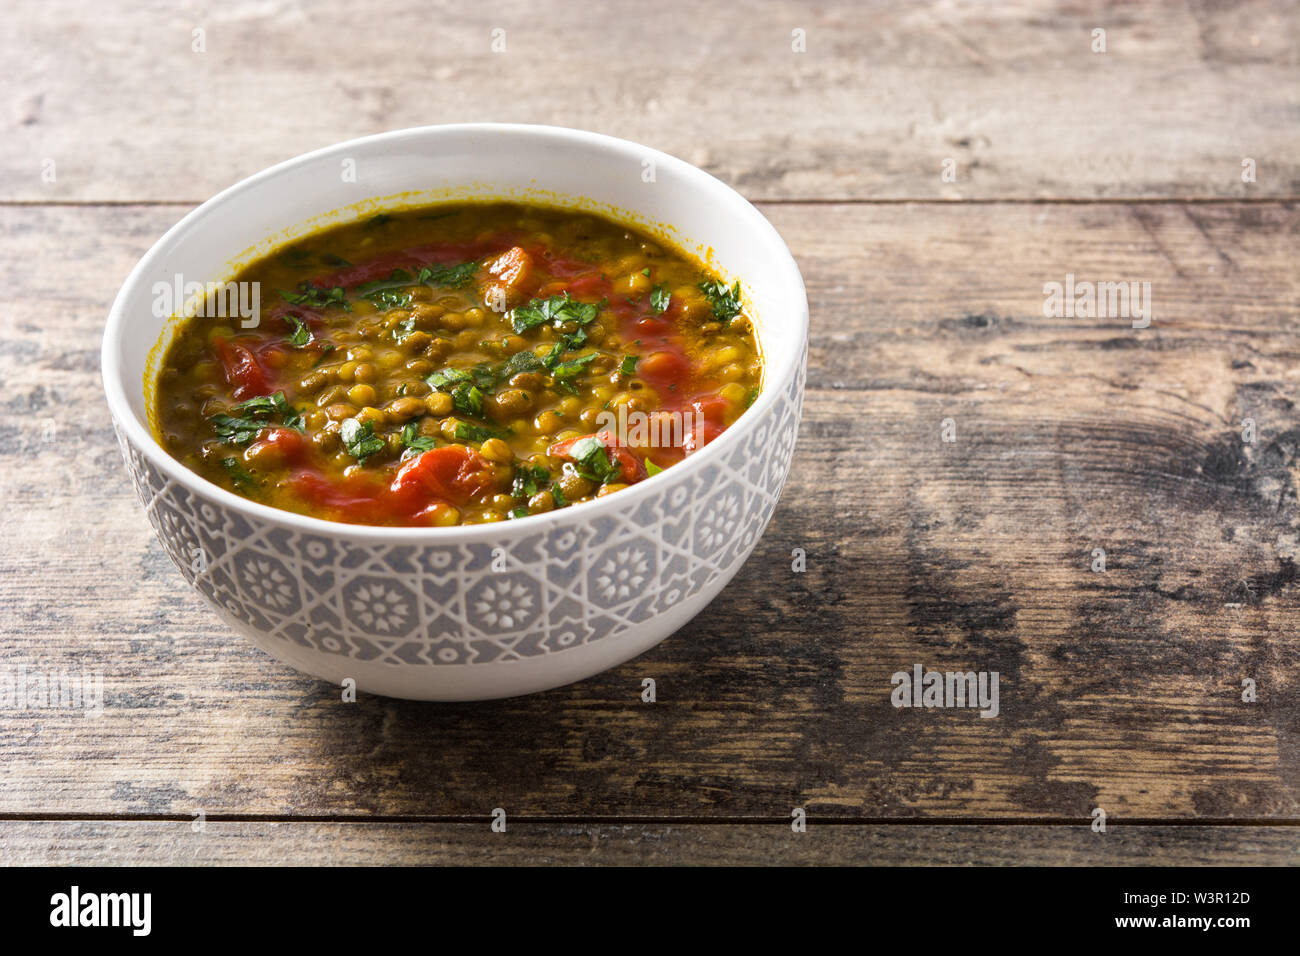 Soupe aux lentilles indiennes dal (dhal) dans un bol sur la table en bois. Copyspace Banque D'Images